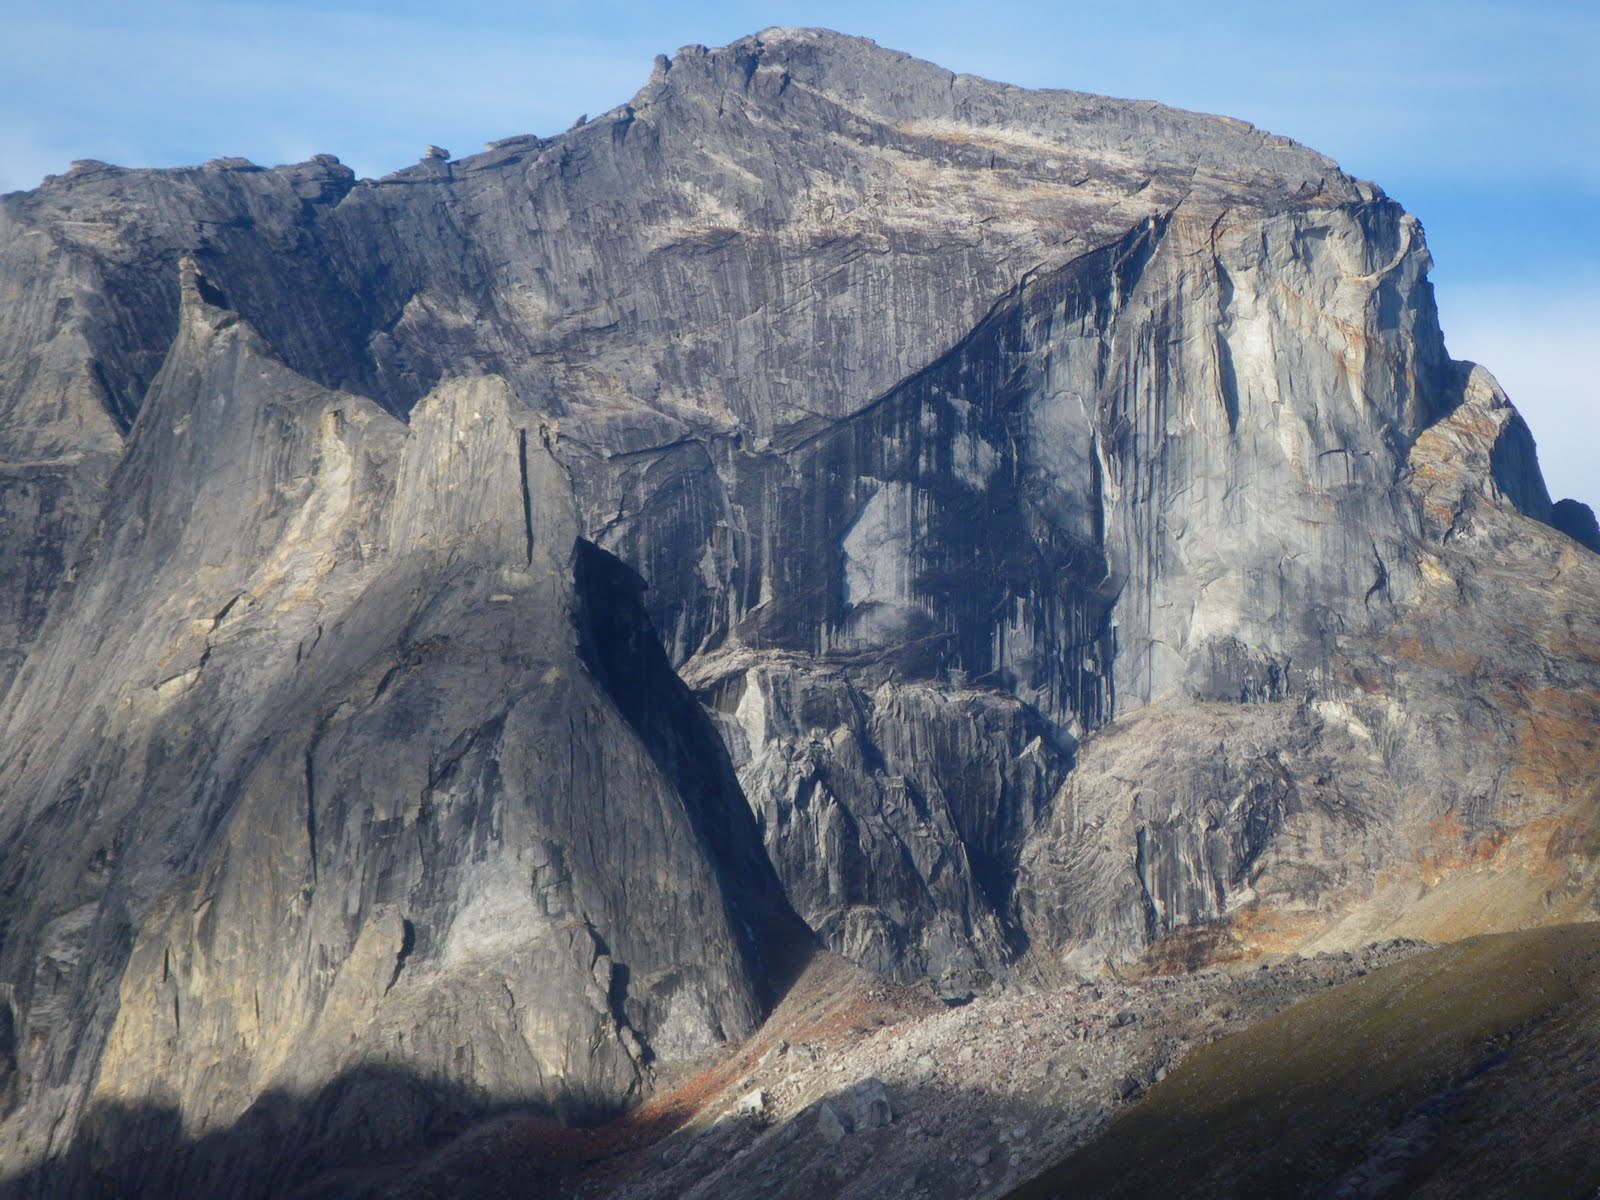 Непройденная стена горы Занаду (Xanadu). По высоте эта стена 500-750 метров